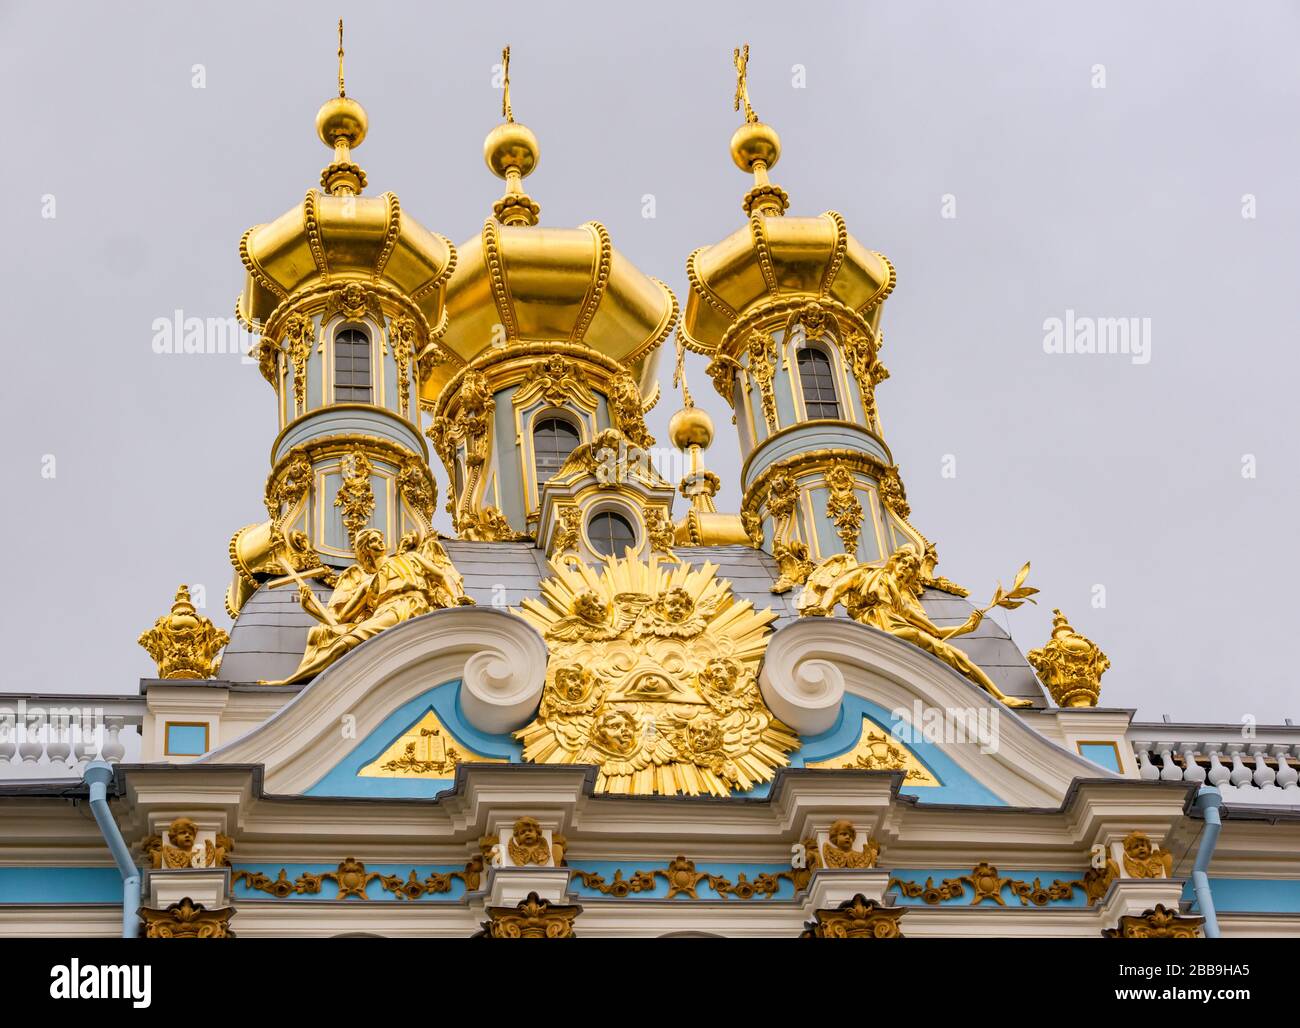 Cupole di cipolla d'oro del Palazzo di Caterina, Villaggio di Tsars, Tsarskoe Selo, Pushkin, Federazione russa Foto Stock